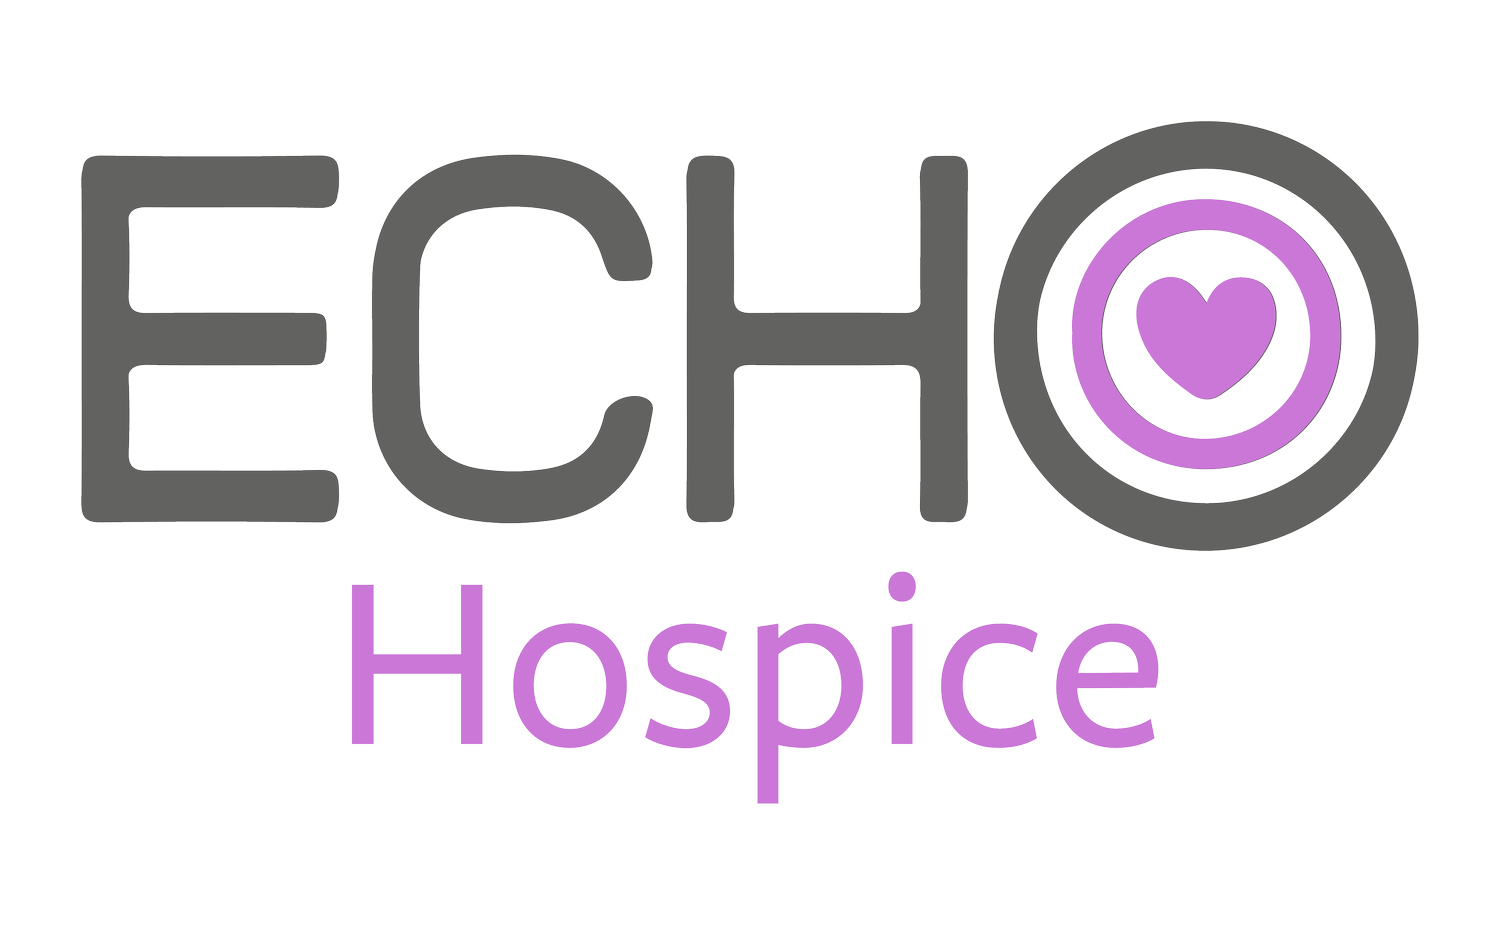 Echo Hospice